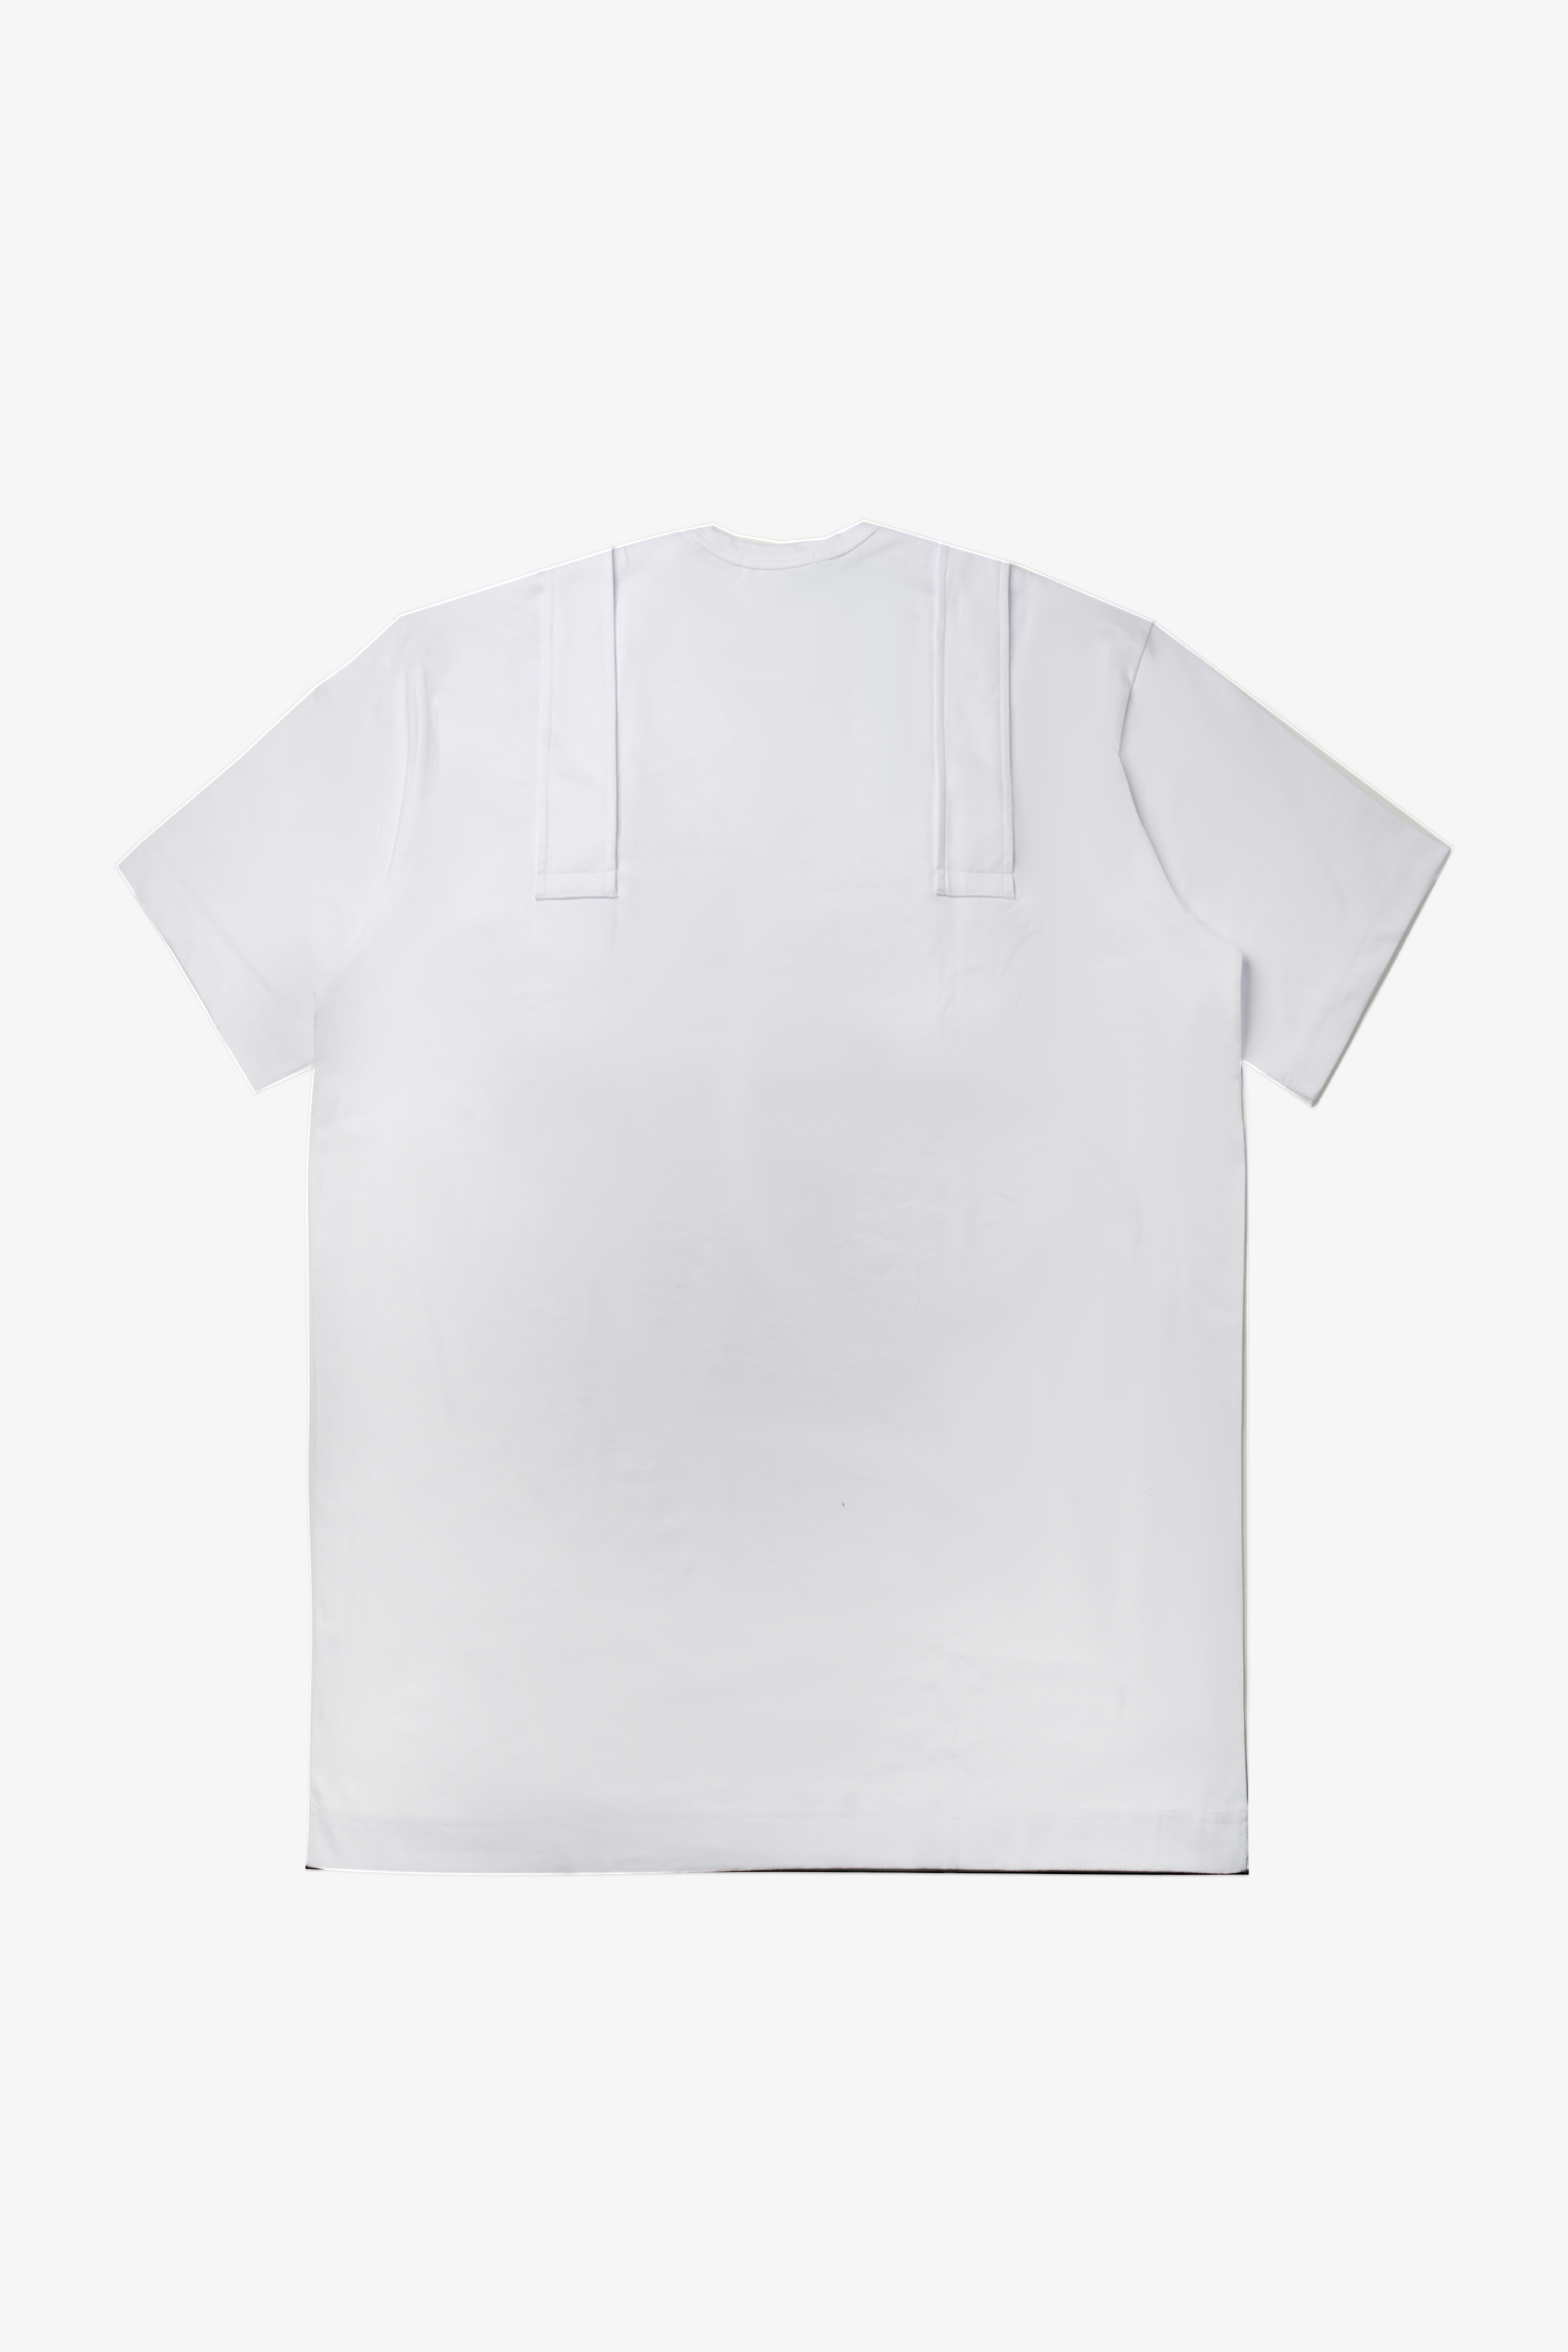 Selectshop FRAME - COMME DES GARÇONS SHIRT T-Shirts T-Shirts Dubai